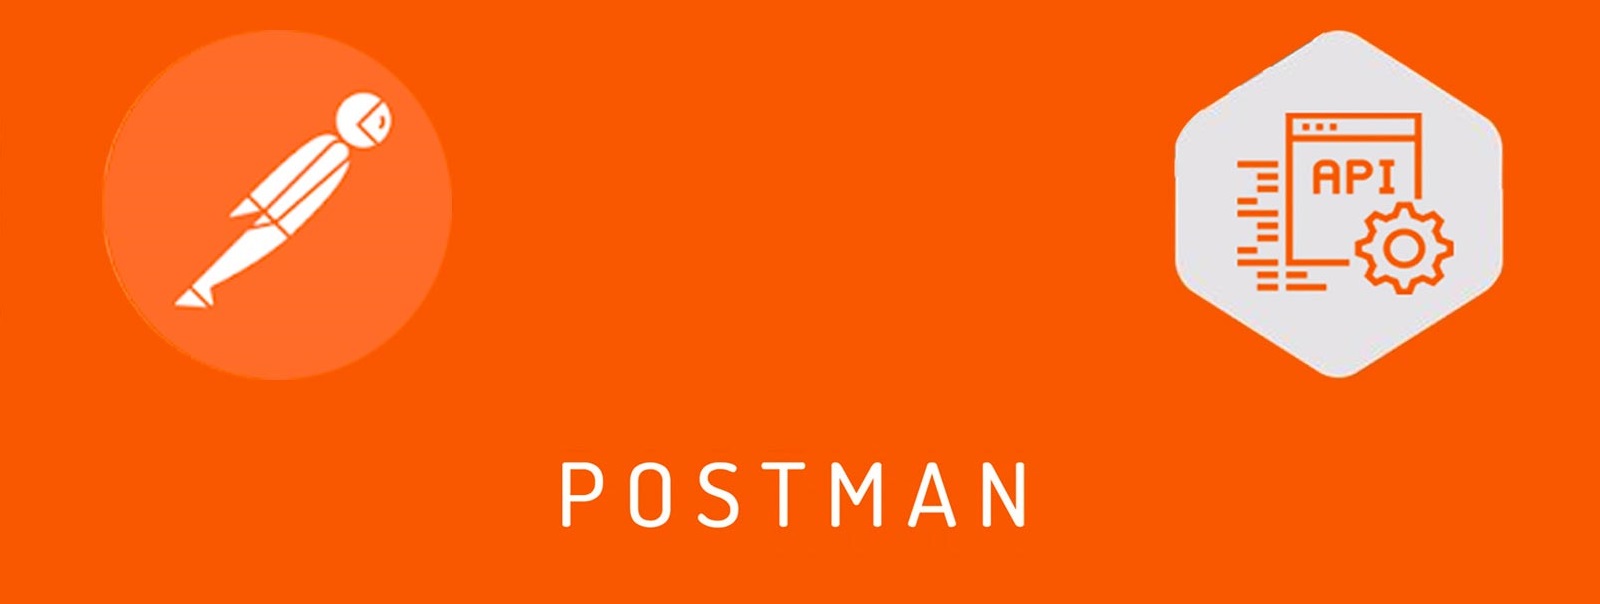 Взаимодействие с Telegram Bot API через Postman